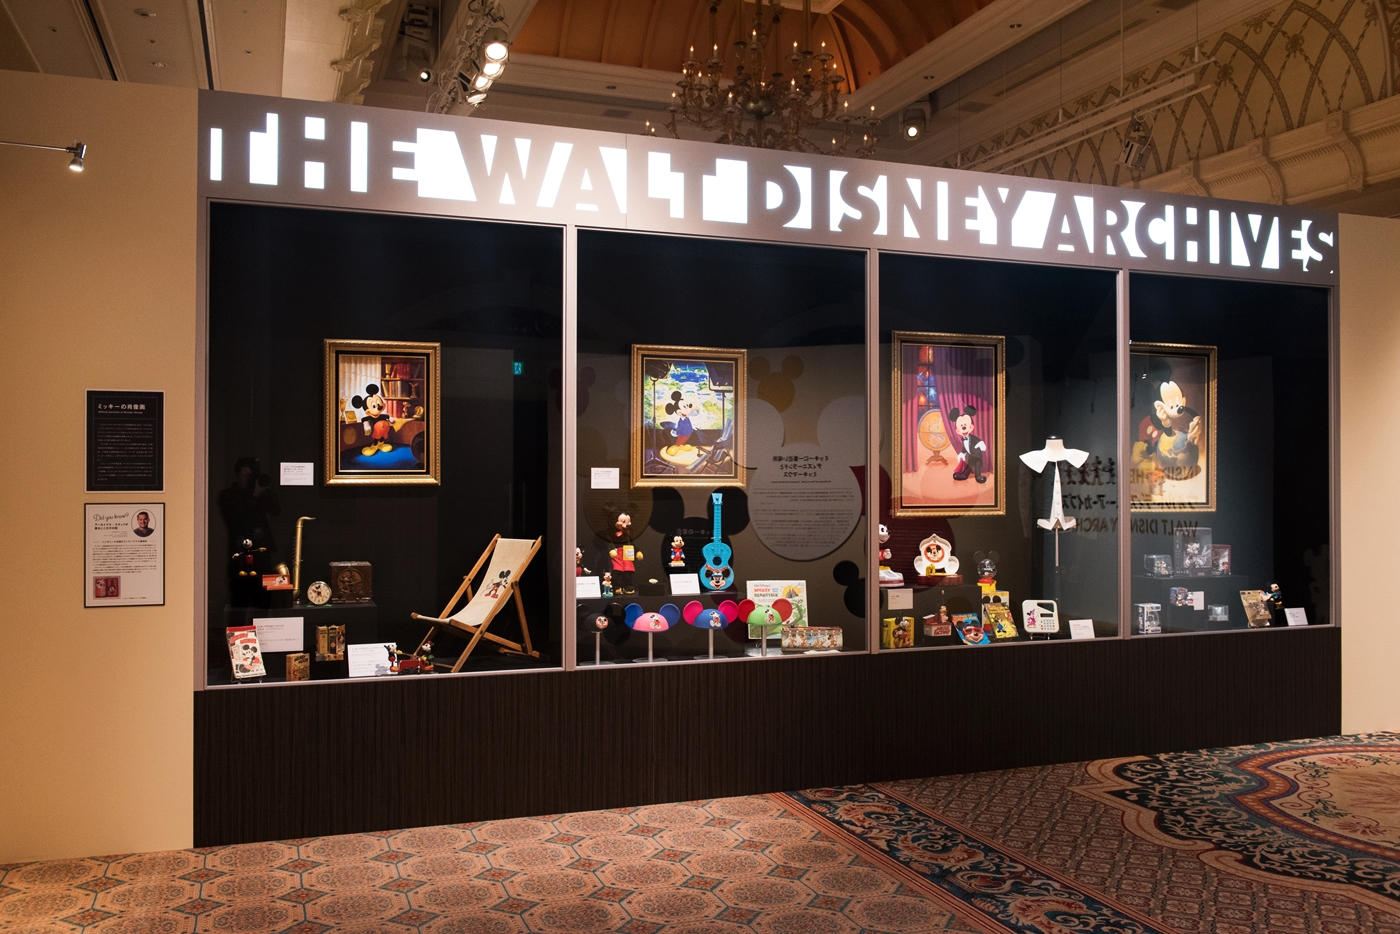 10 17 12 12 名古屋で開催 ウォルト ディズニー アーカイブス展 ミッキーマウスから続く 未来への物語 日刊ケリー